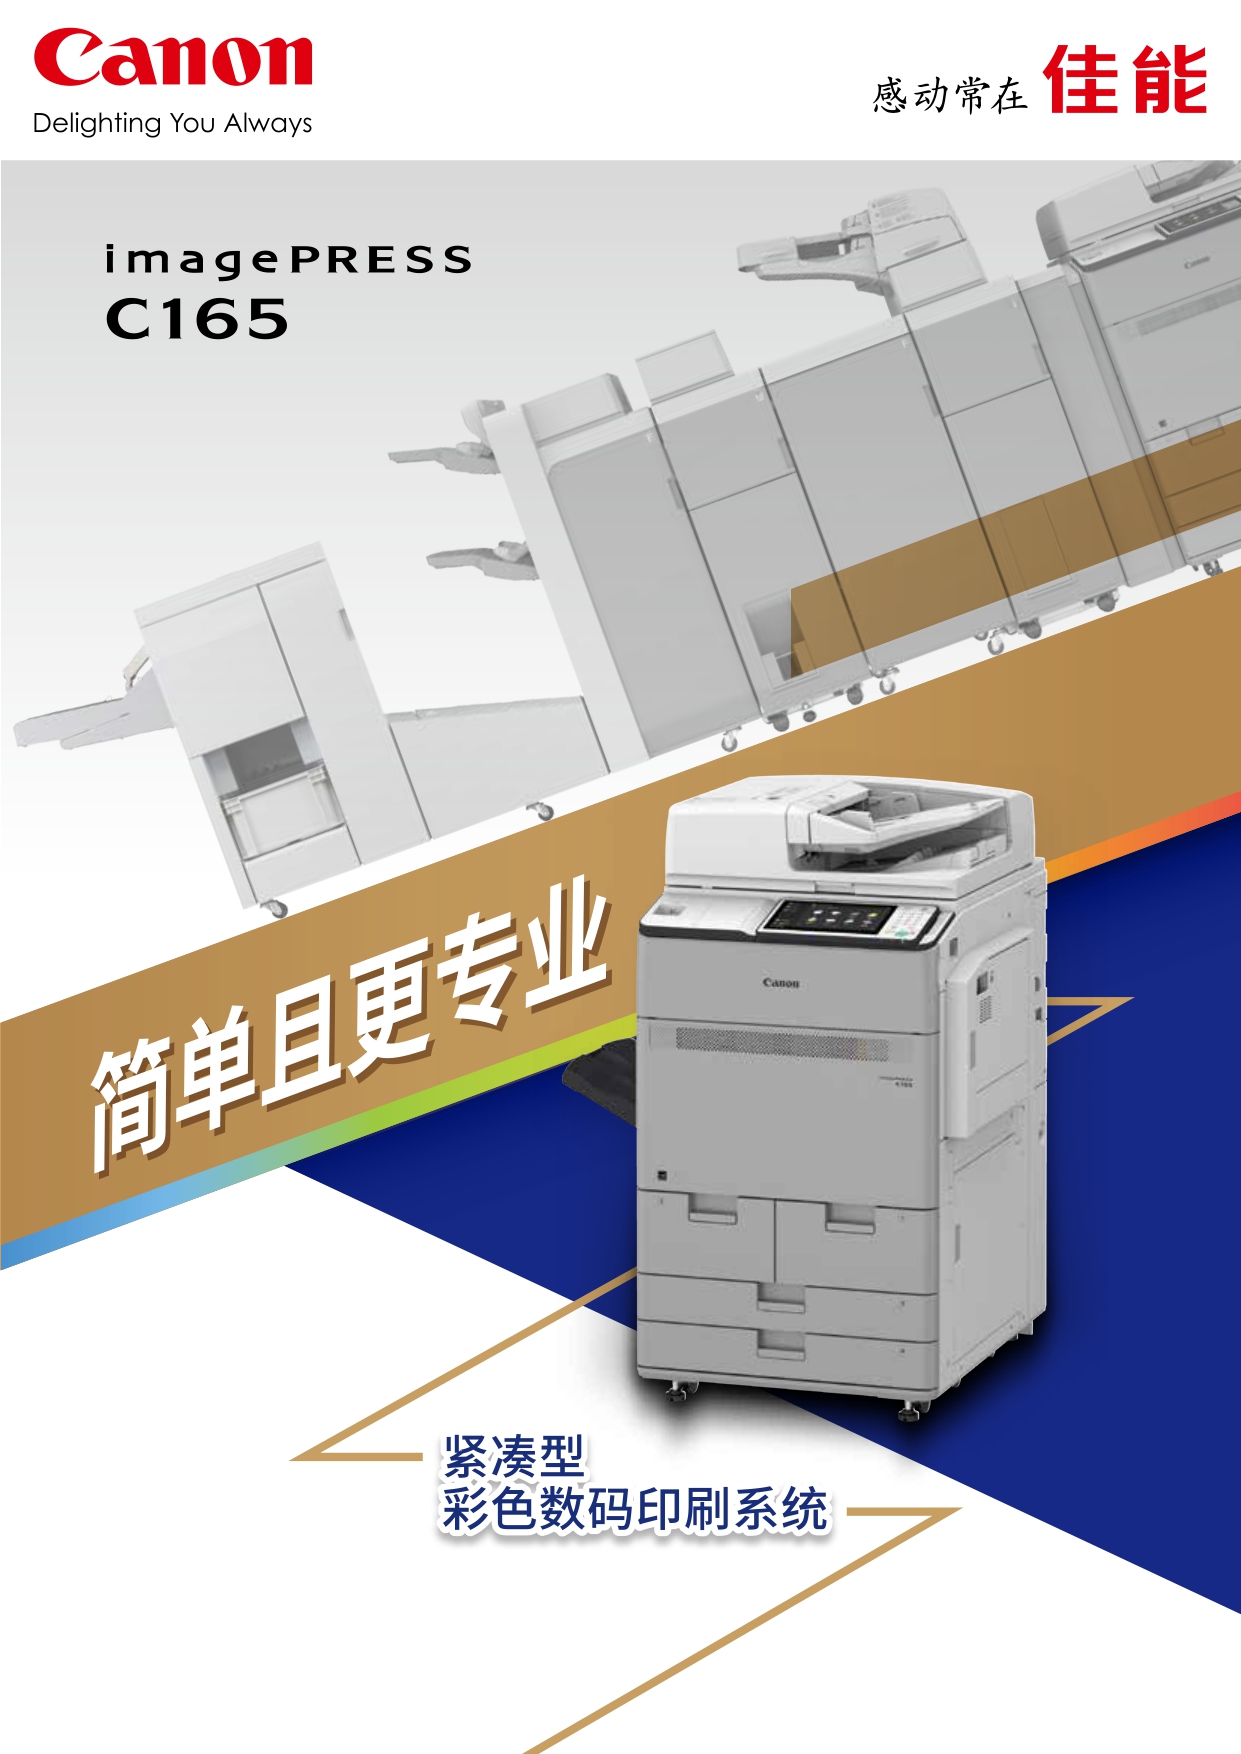 彩色数码印刷系统 imagePRESS C165 彩页_page-0001.jpg